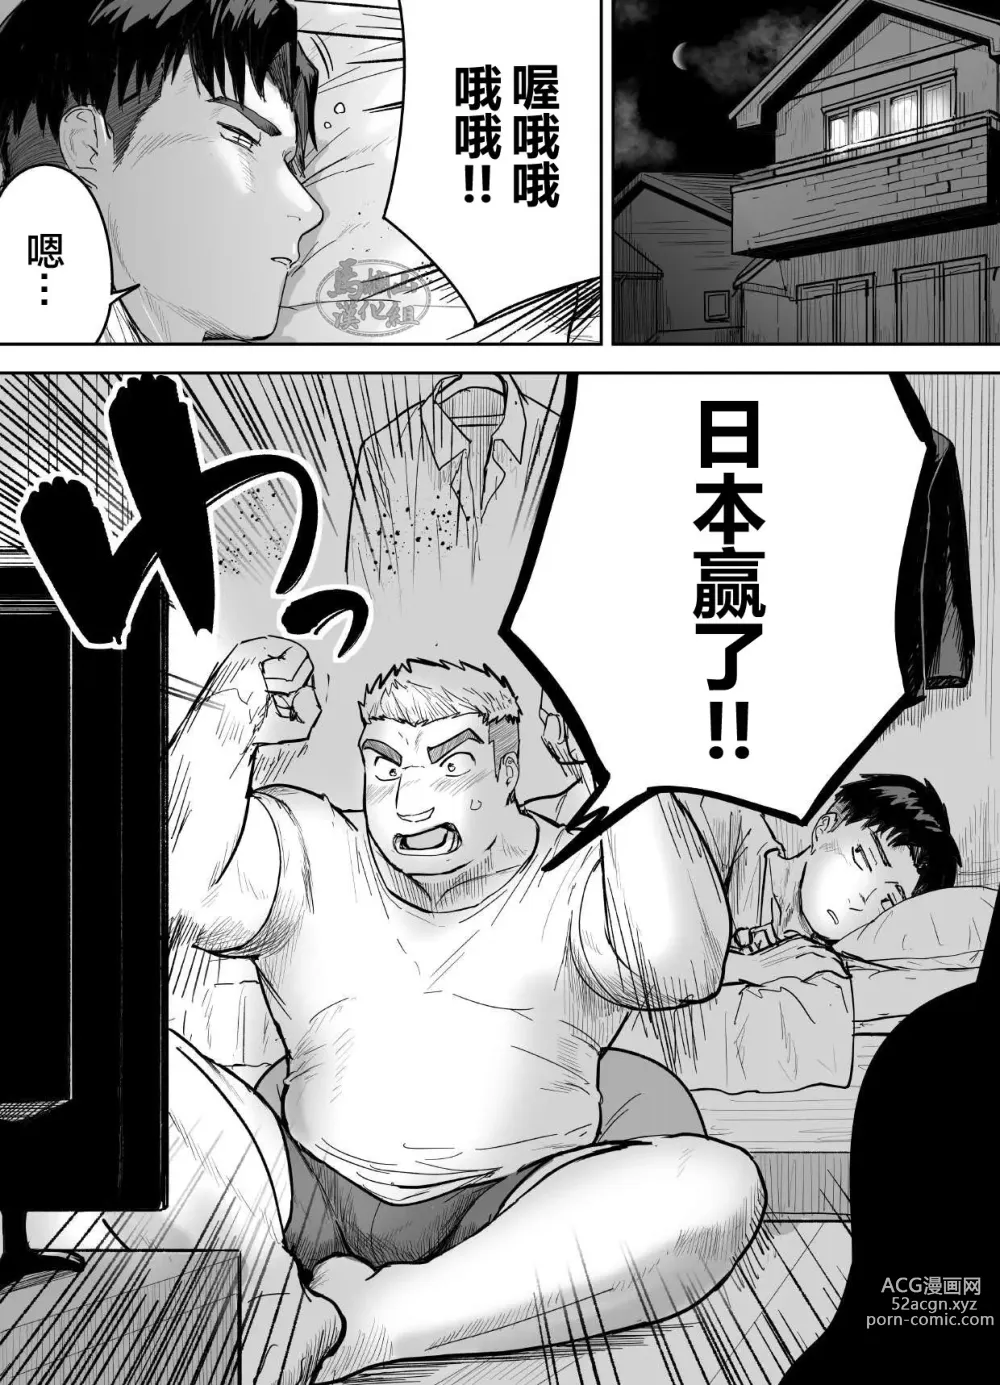 Page 2 of manga 片思いしてるガチムチ同級生に襲われる話